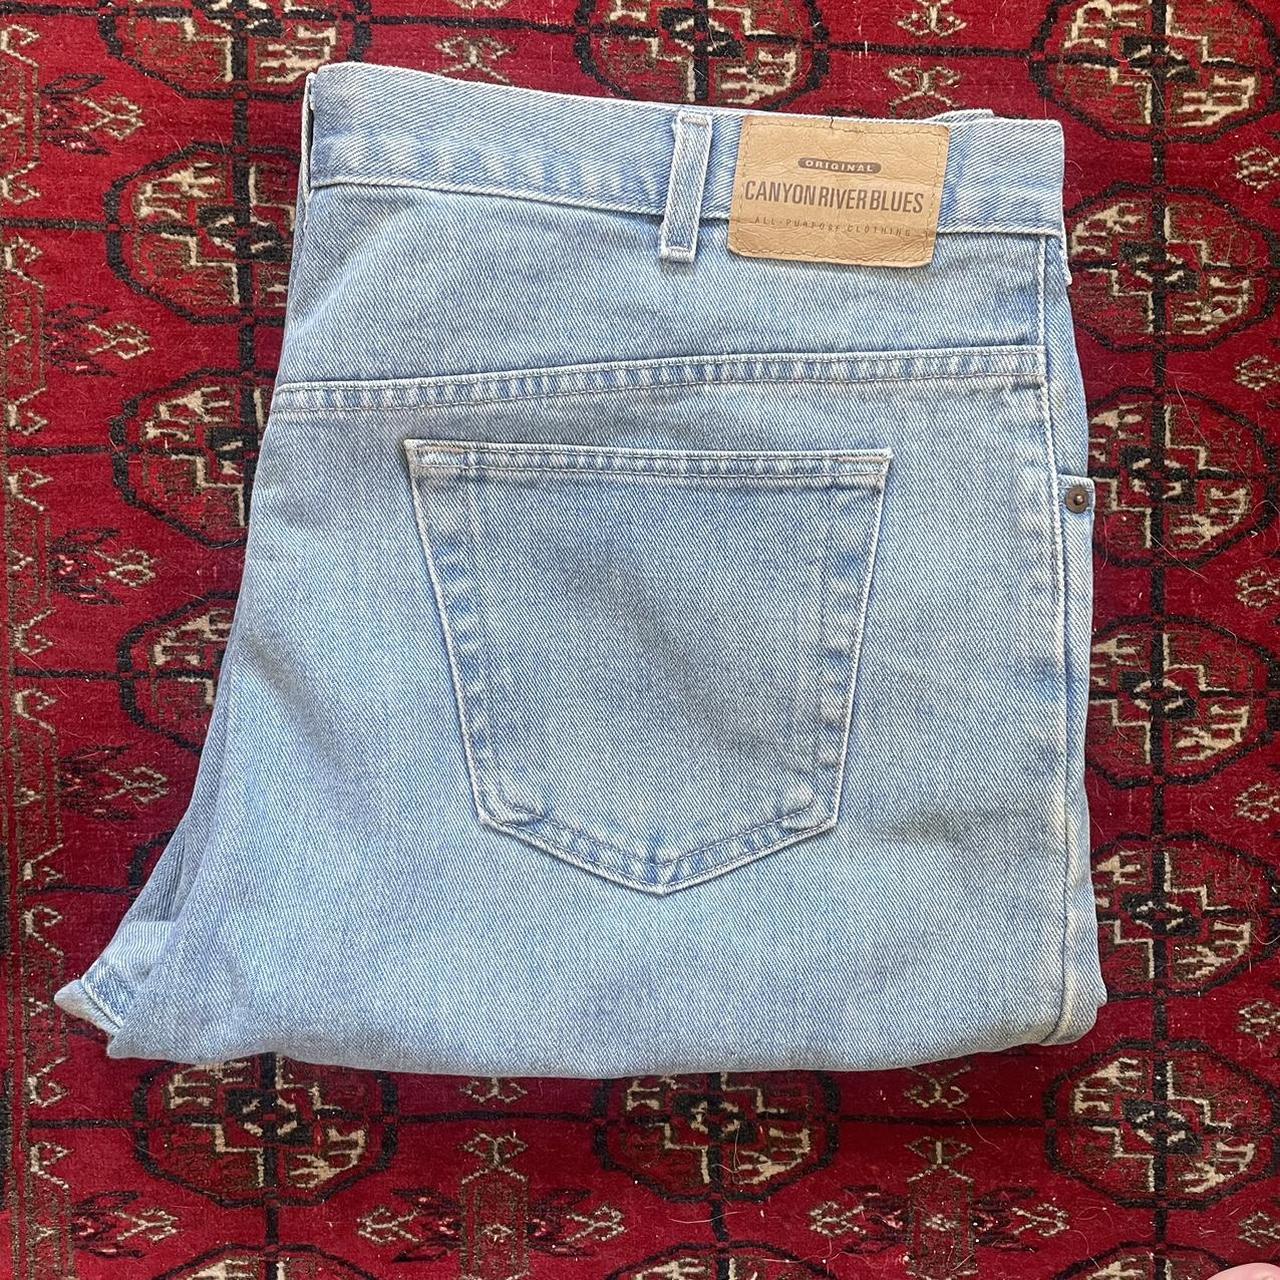 Super baggy vintage Canyon River Blue jeans A... - Depop